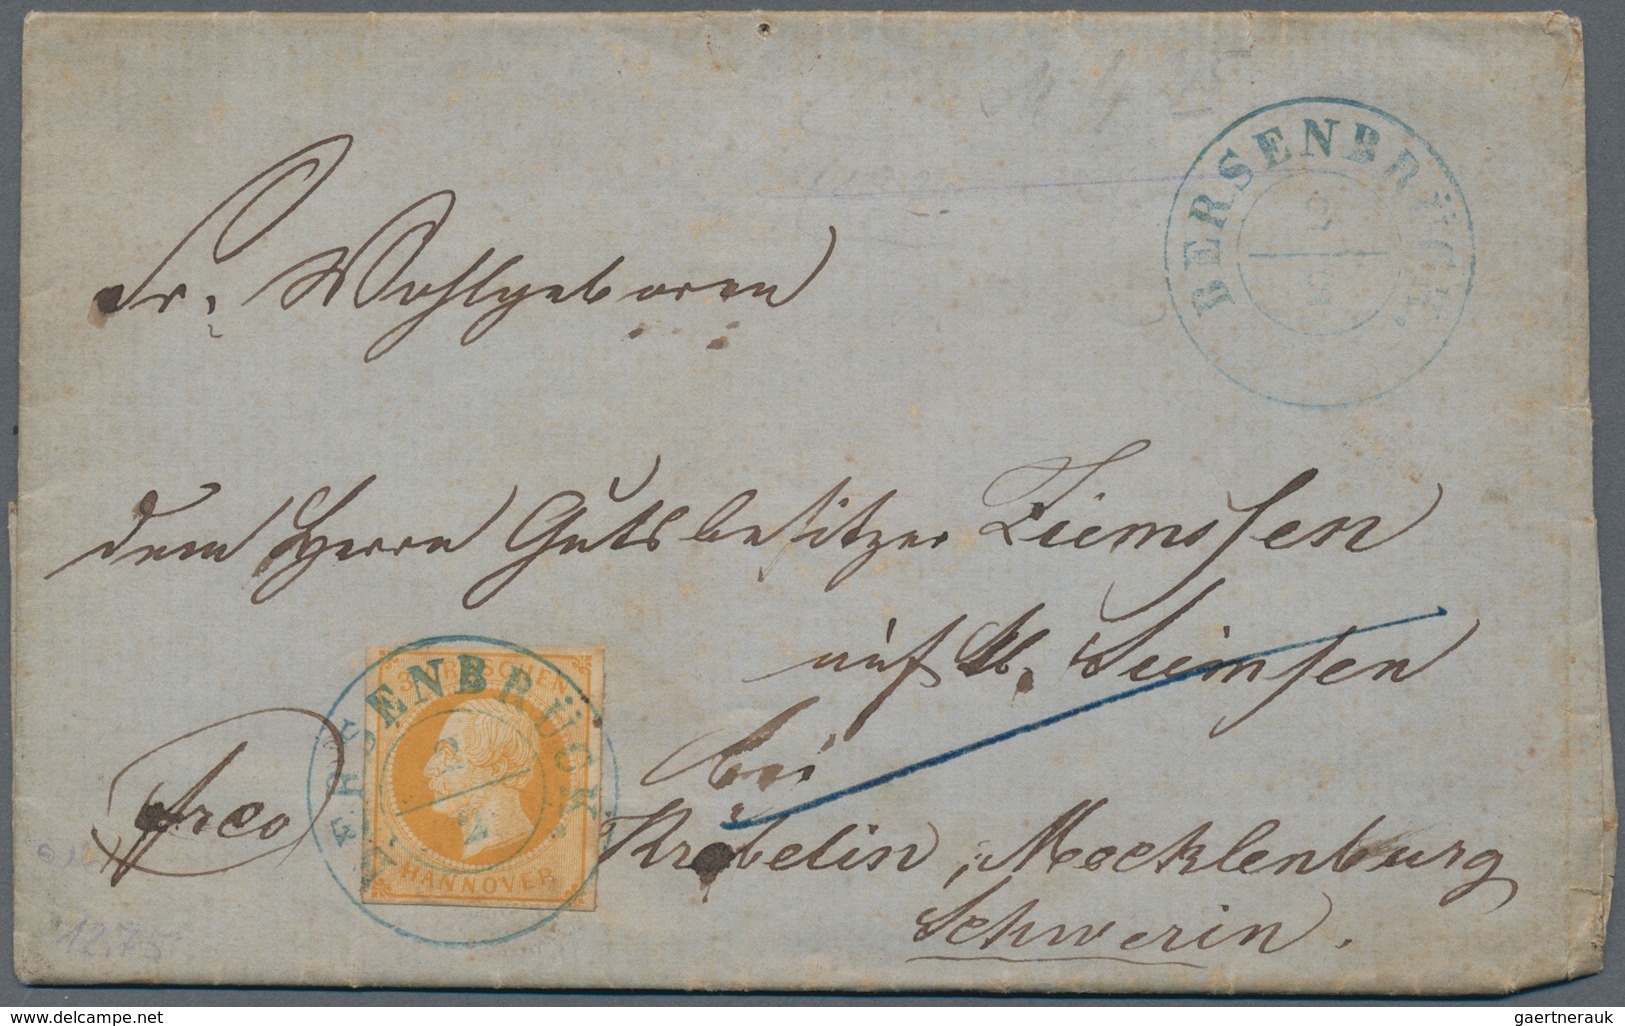 Hannover - Marken Und Briefe: 1859, 3 Gr Orangegelb EF Entwertet Mit Blauem K2 BERSEBRÜCK Auf Kompl. - Hanover